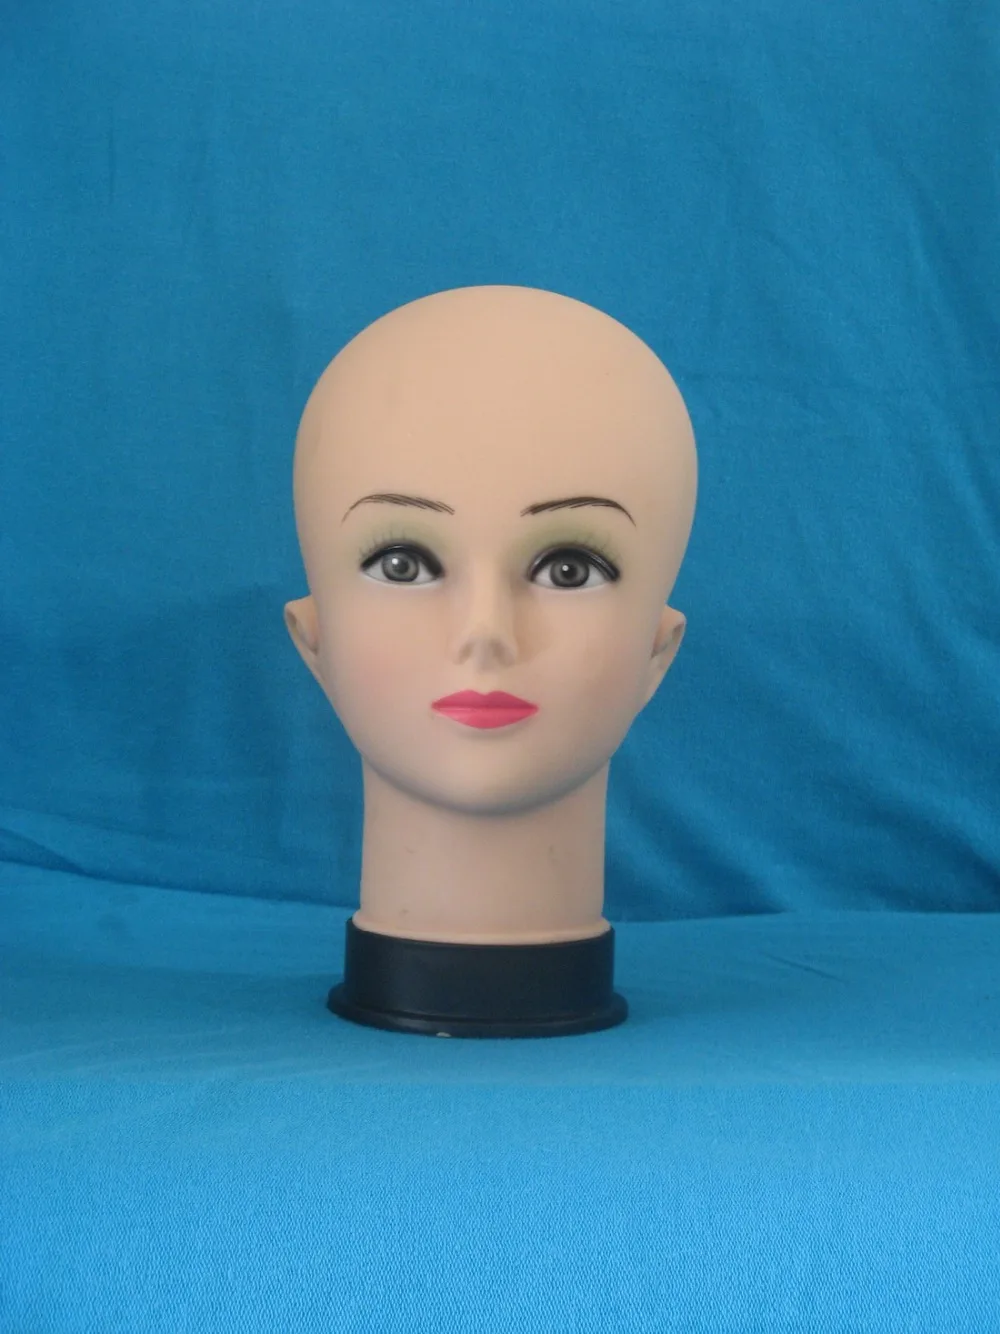 4 шт./лот супер качество женский лысый манекен голова Модель парик шляпа ювелирных изделий дисплей косметологический манекен